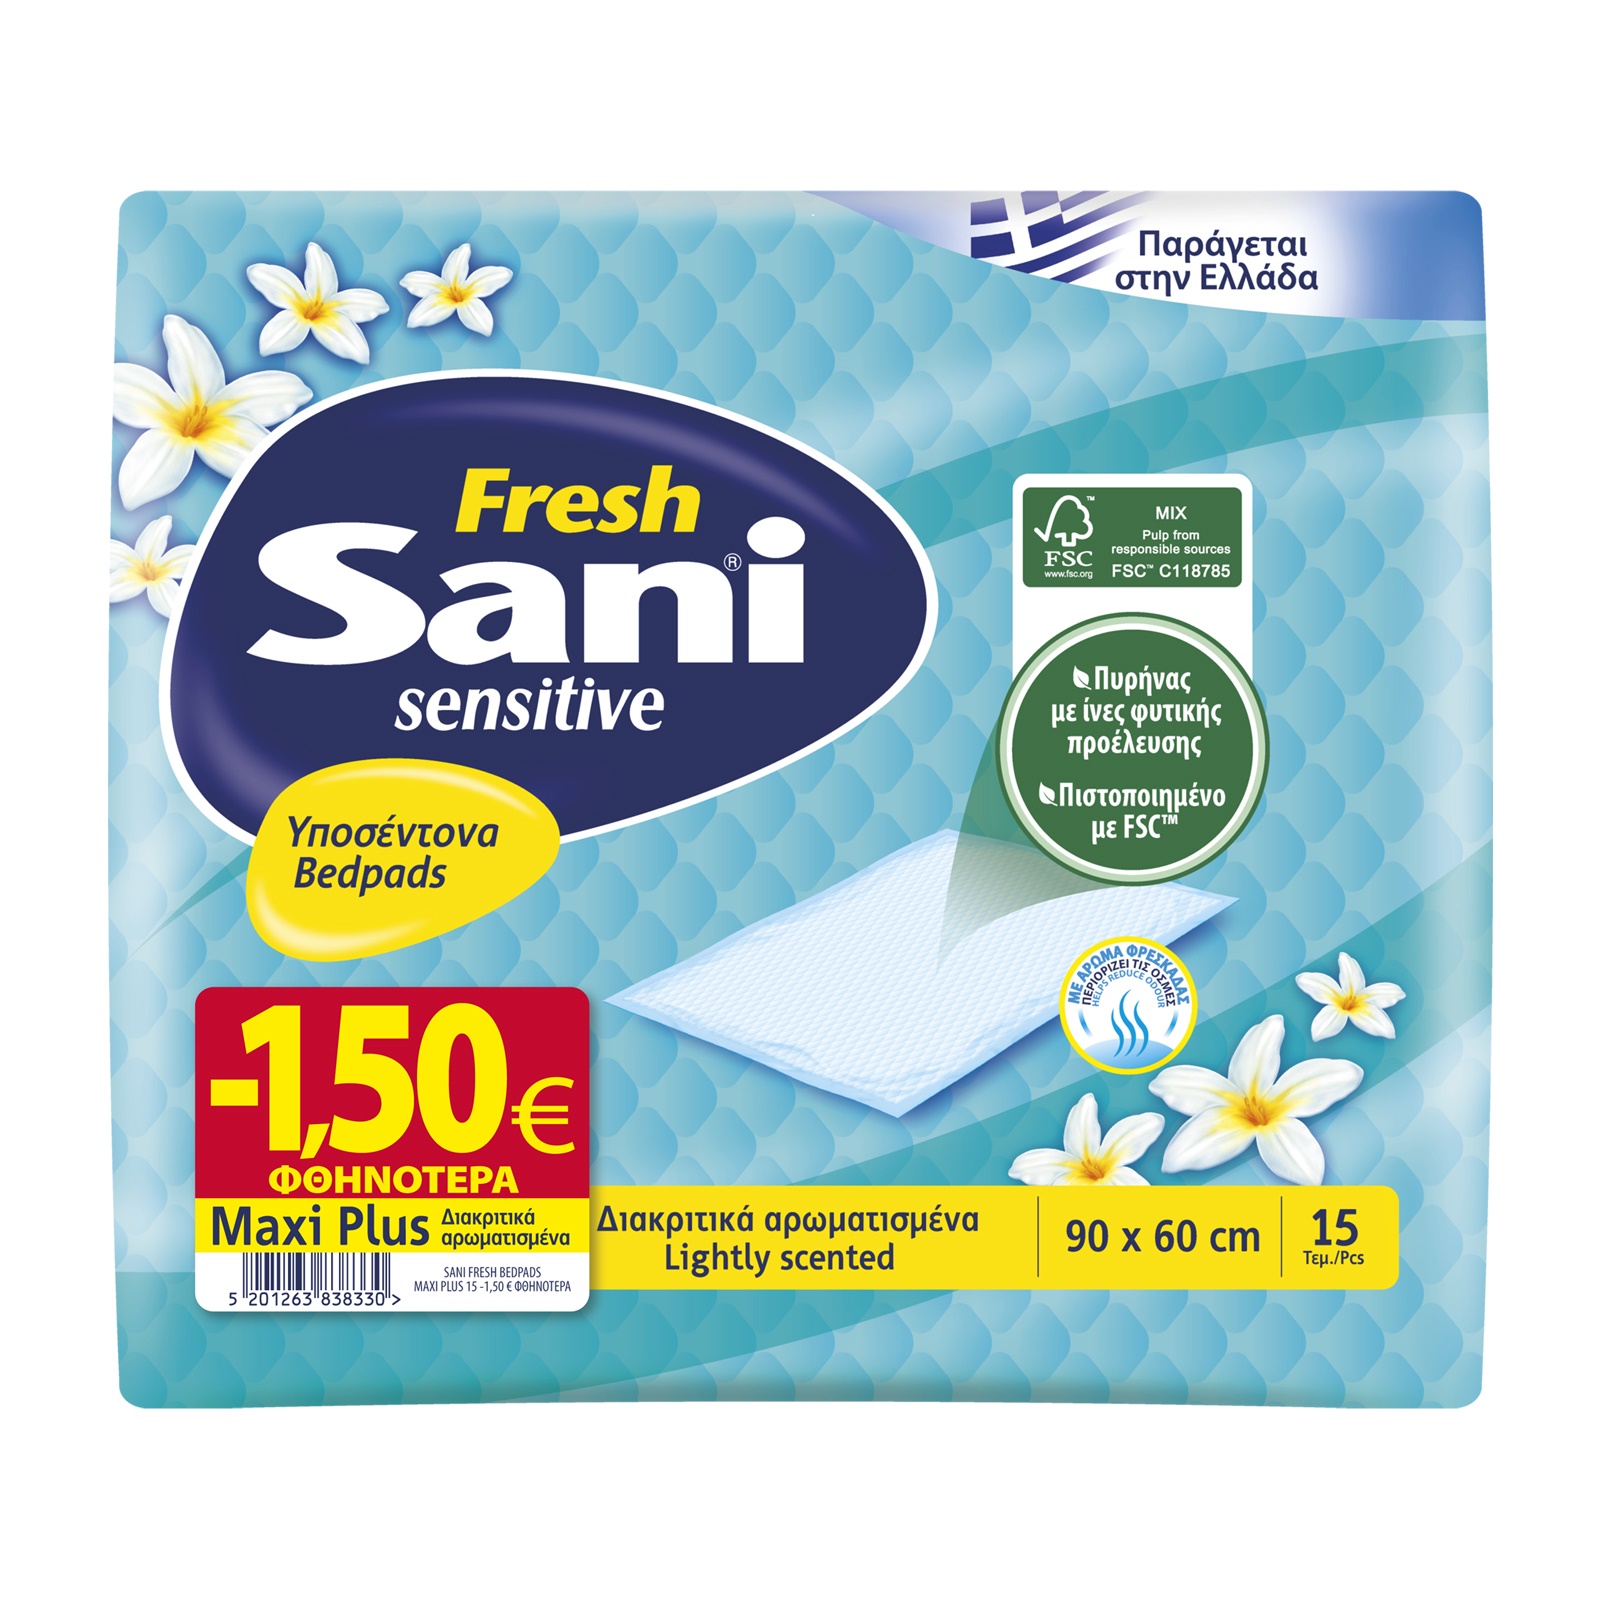 Υποσέντονα ακράτειας Sani Sensitive Fresh Maxi Plus (15 τεμ) -1,50€